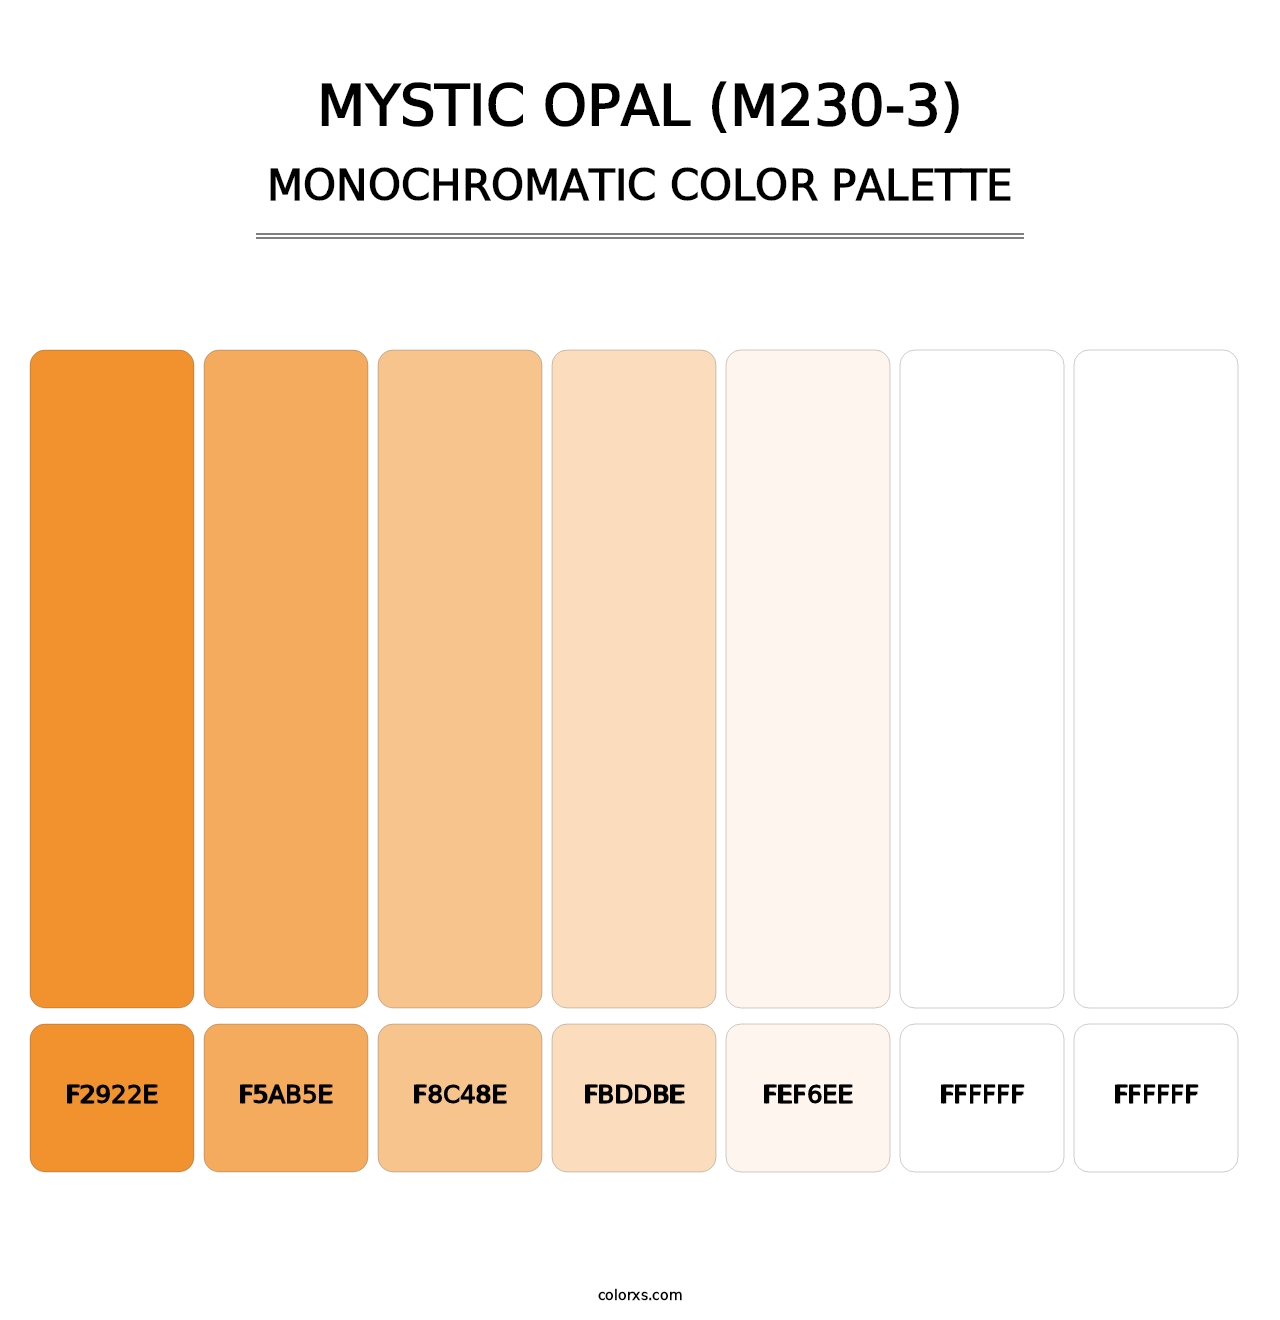 Mystic Opal (M230-3) - Monochromatic Color Palette